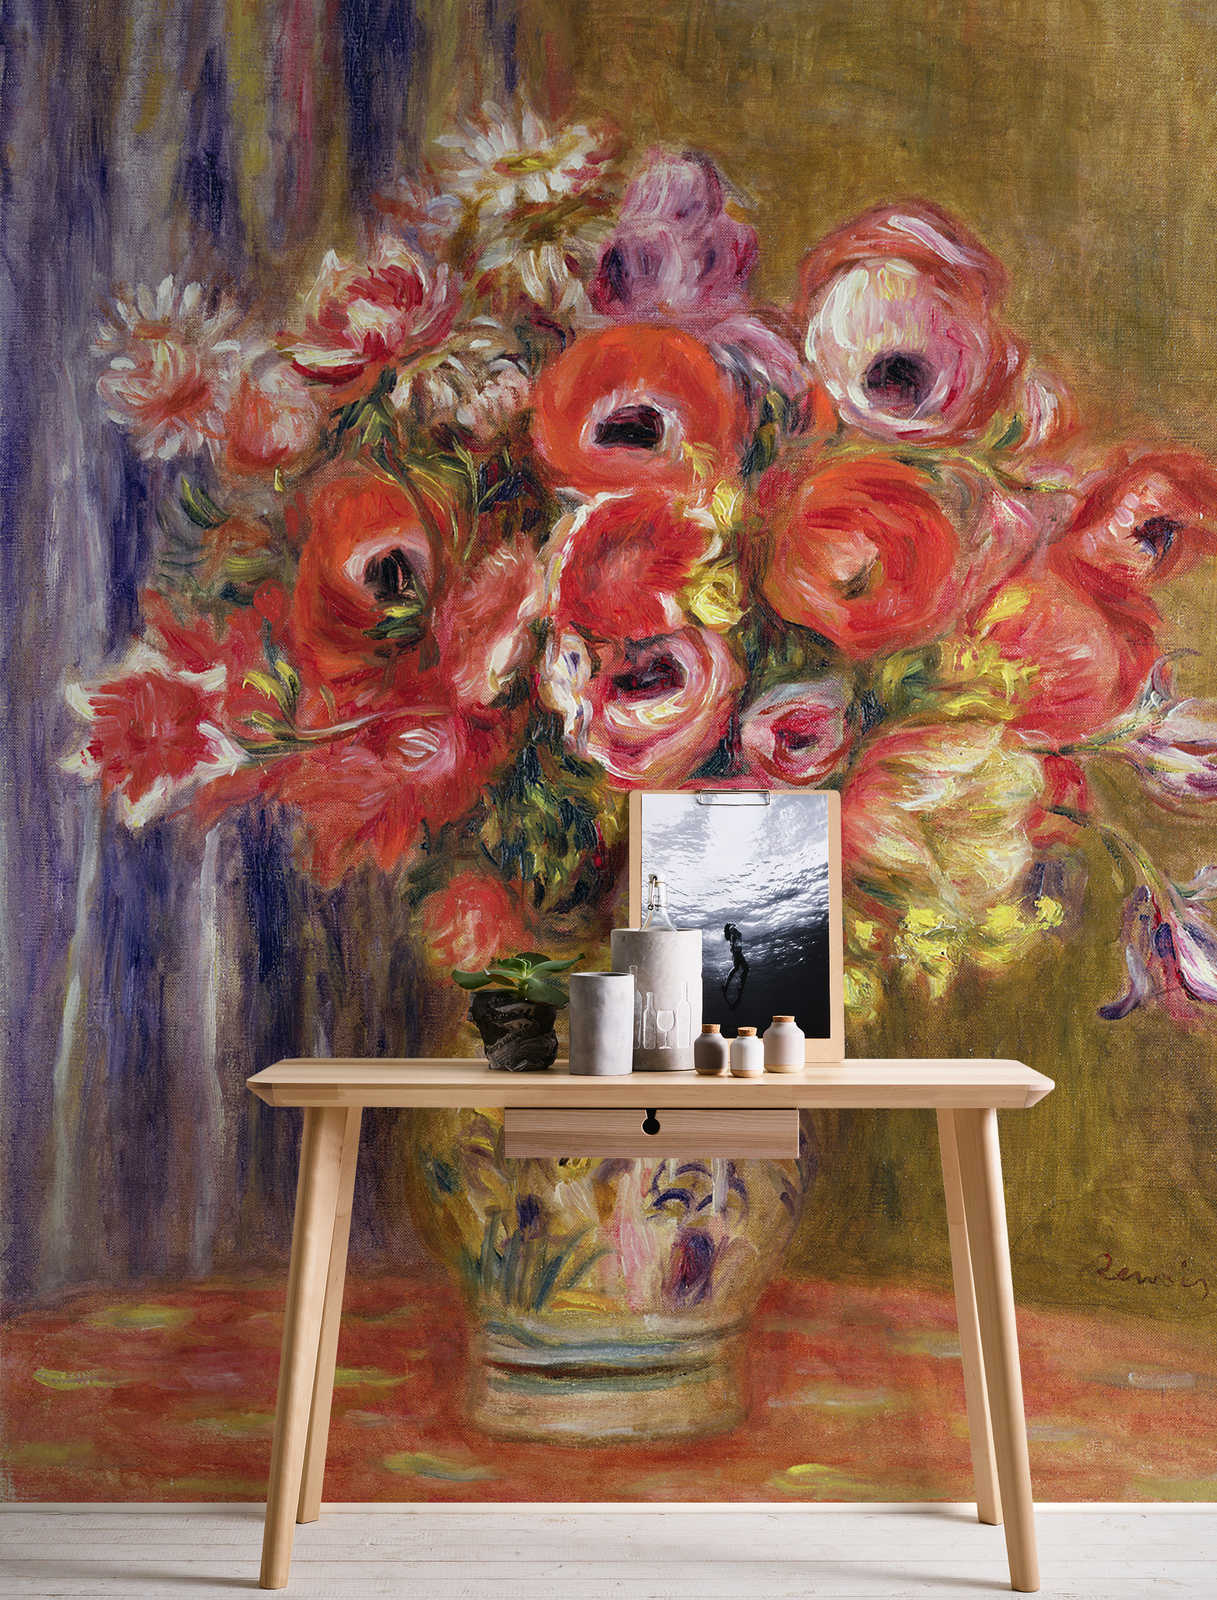             Fototapete "Vase mit Tulpen und Anemonen" von Pierre Auguste Renoir
        